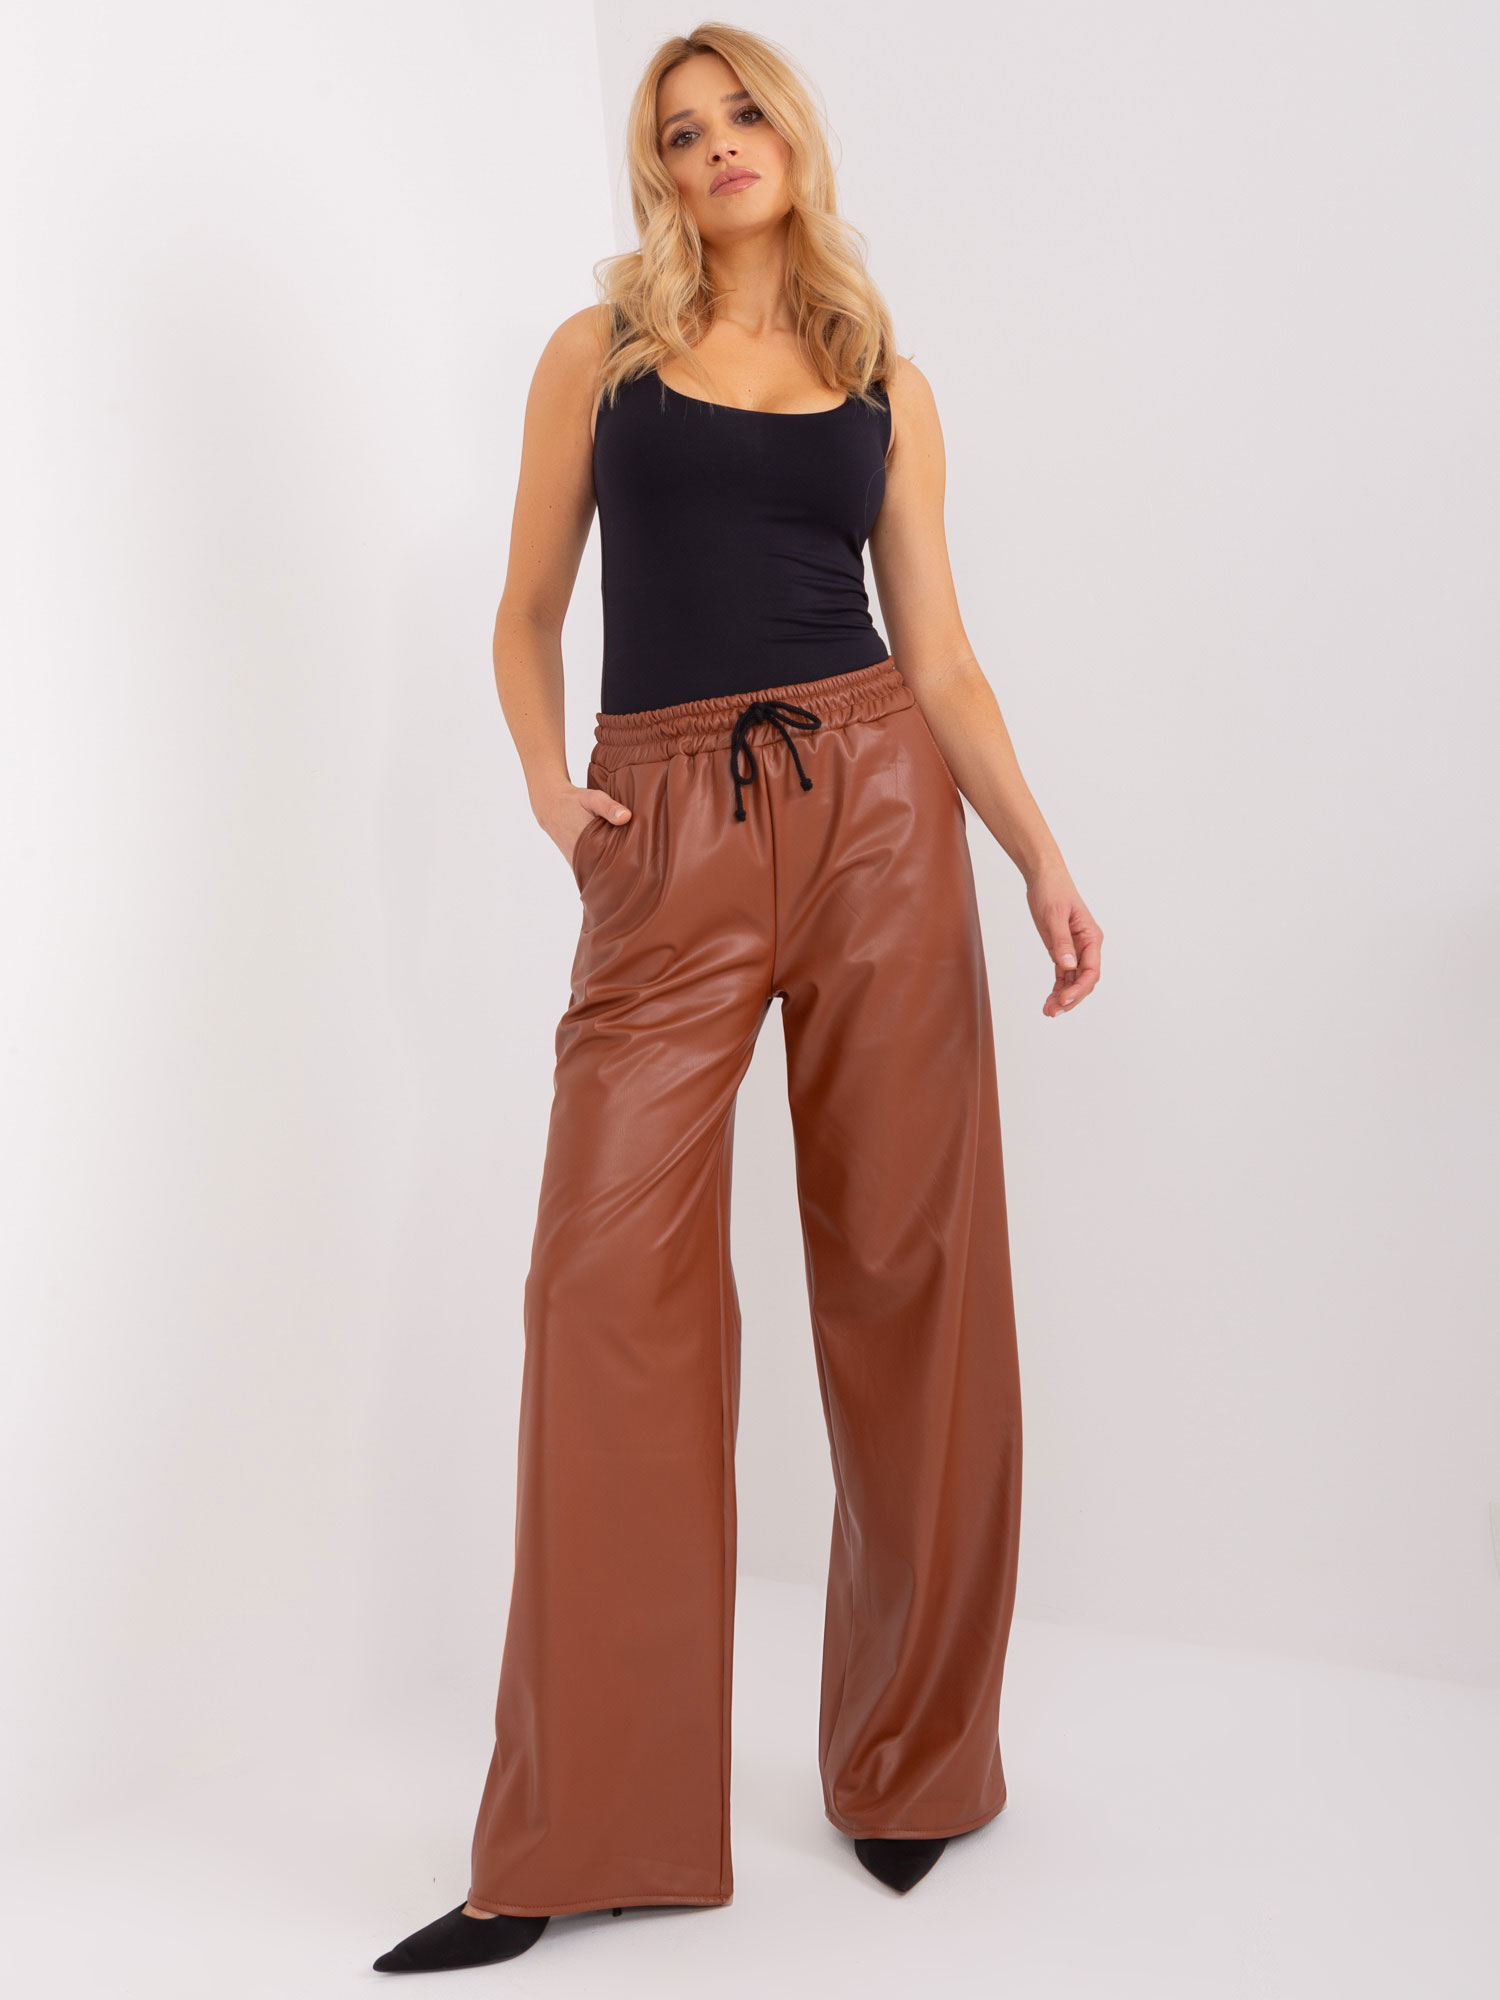 Hnědé zvonové koženkové kalhoty -LK-SP-509453.47-light brown Velikost: L/XL